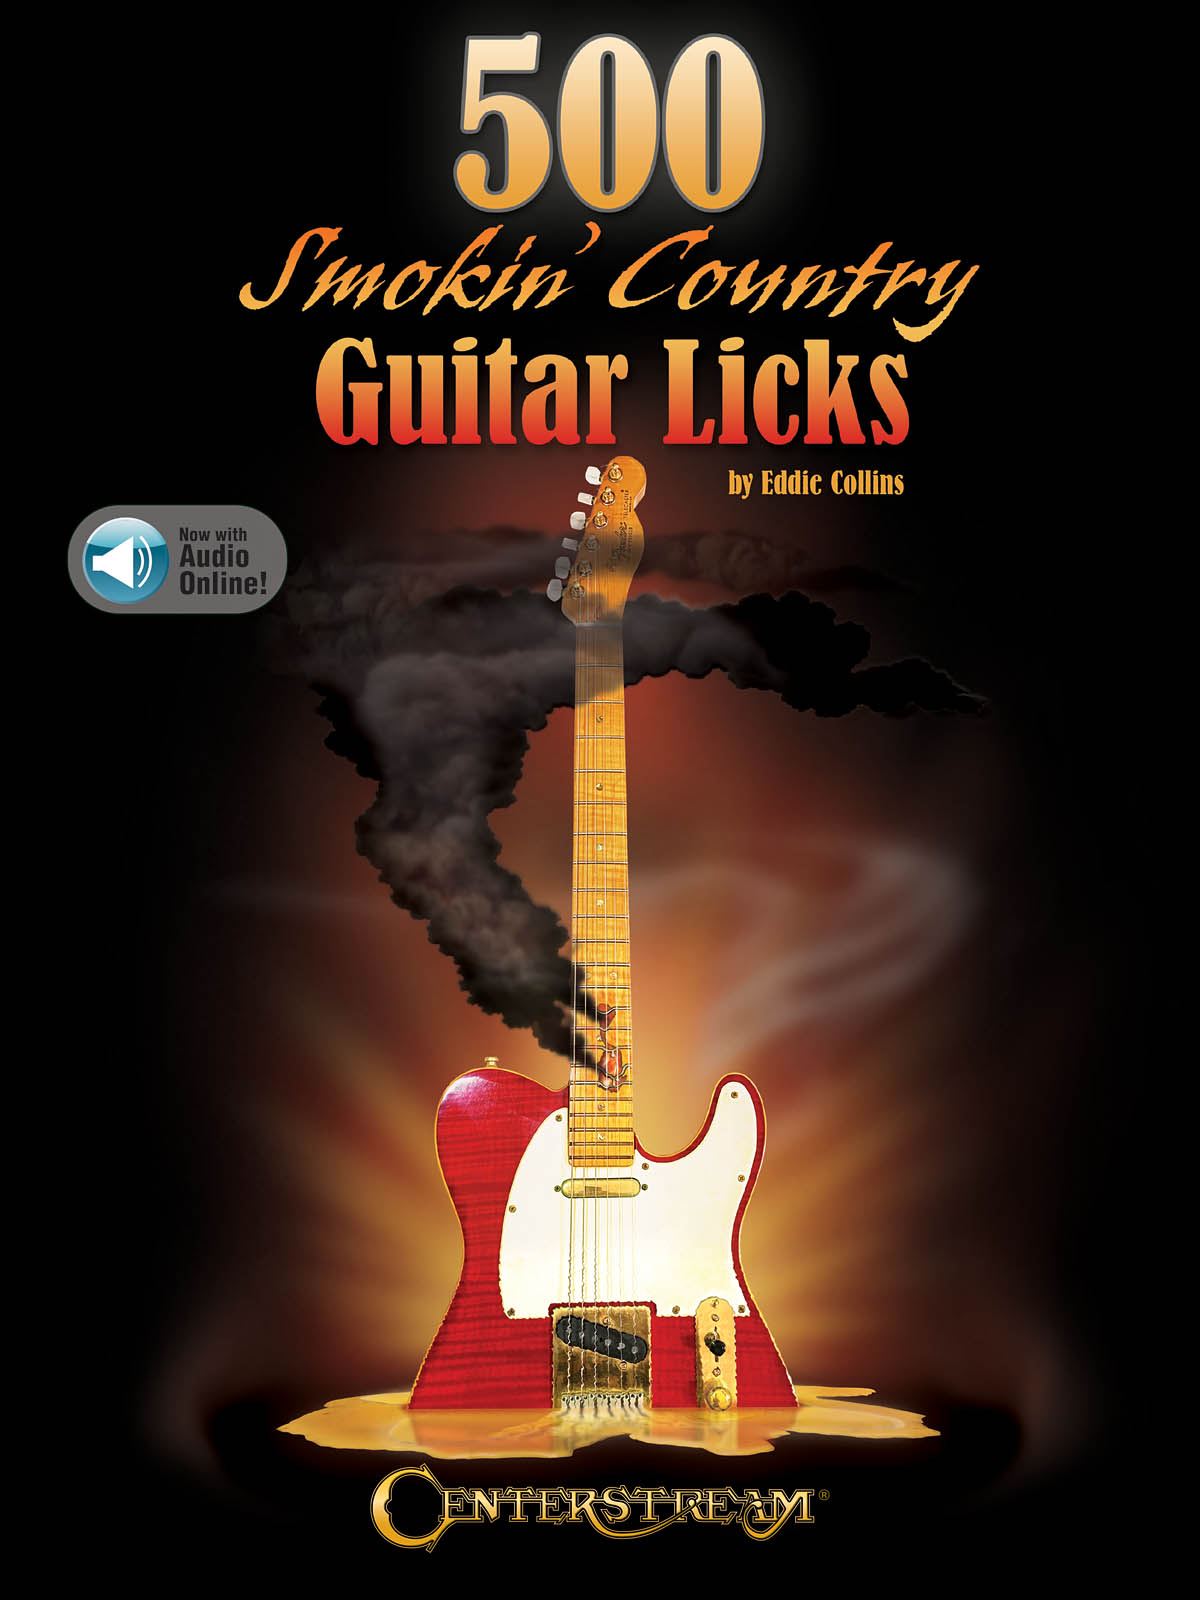 500 Smokin' Country Guitar Licks: Guitar Solo: Instrumental Album